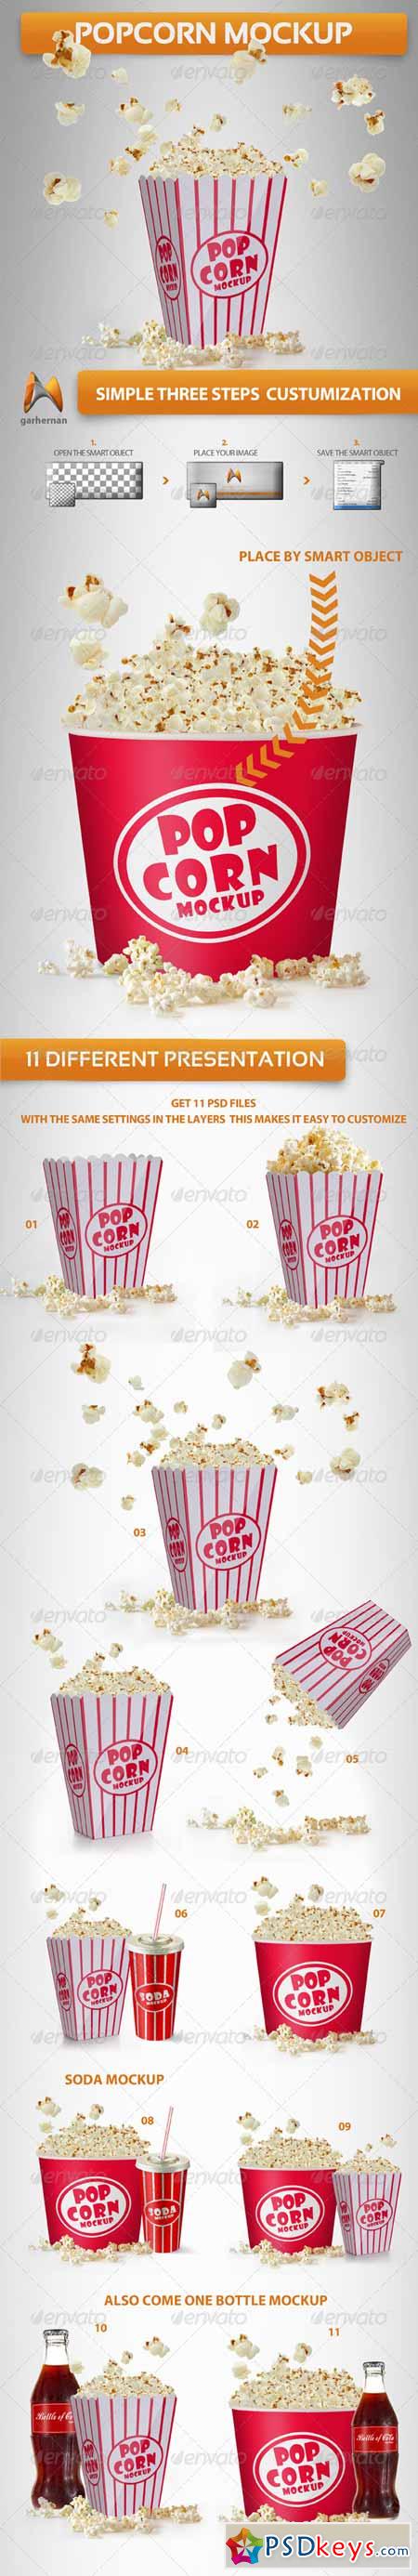 Popcorn Mockup 4441605